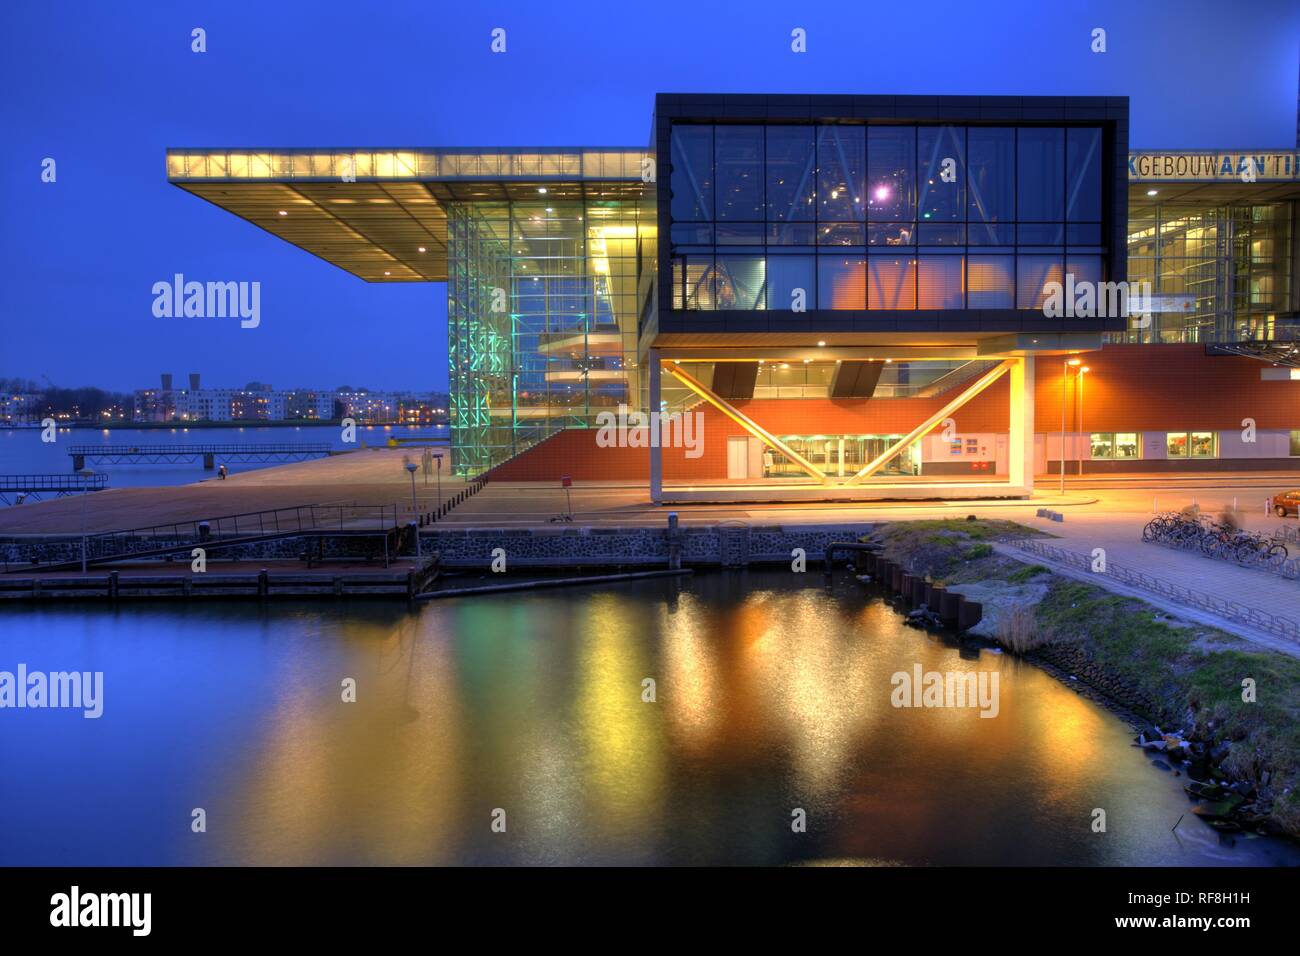 NLD, Paesi Bassi. Amsterdam: concert hall, Muziekgebouw aan'TJI. Foto Stock